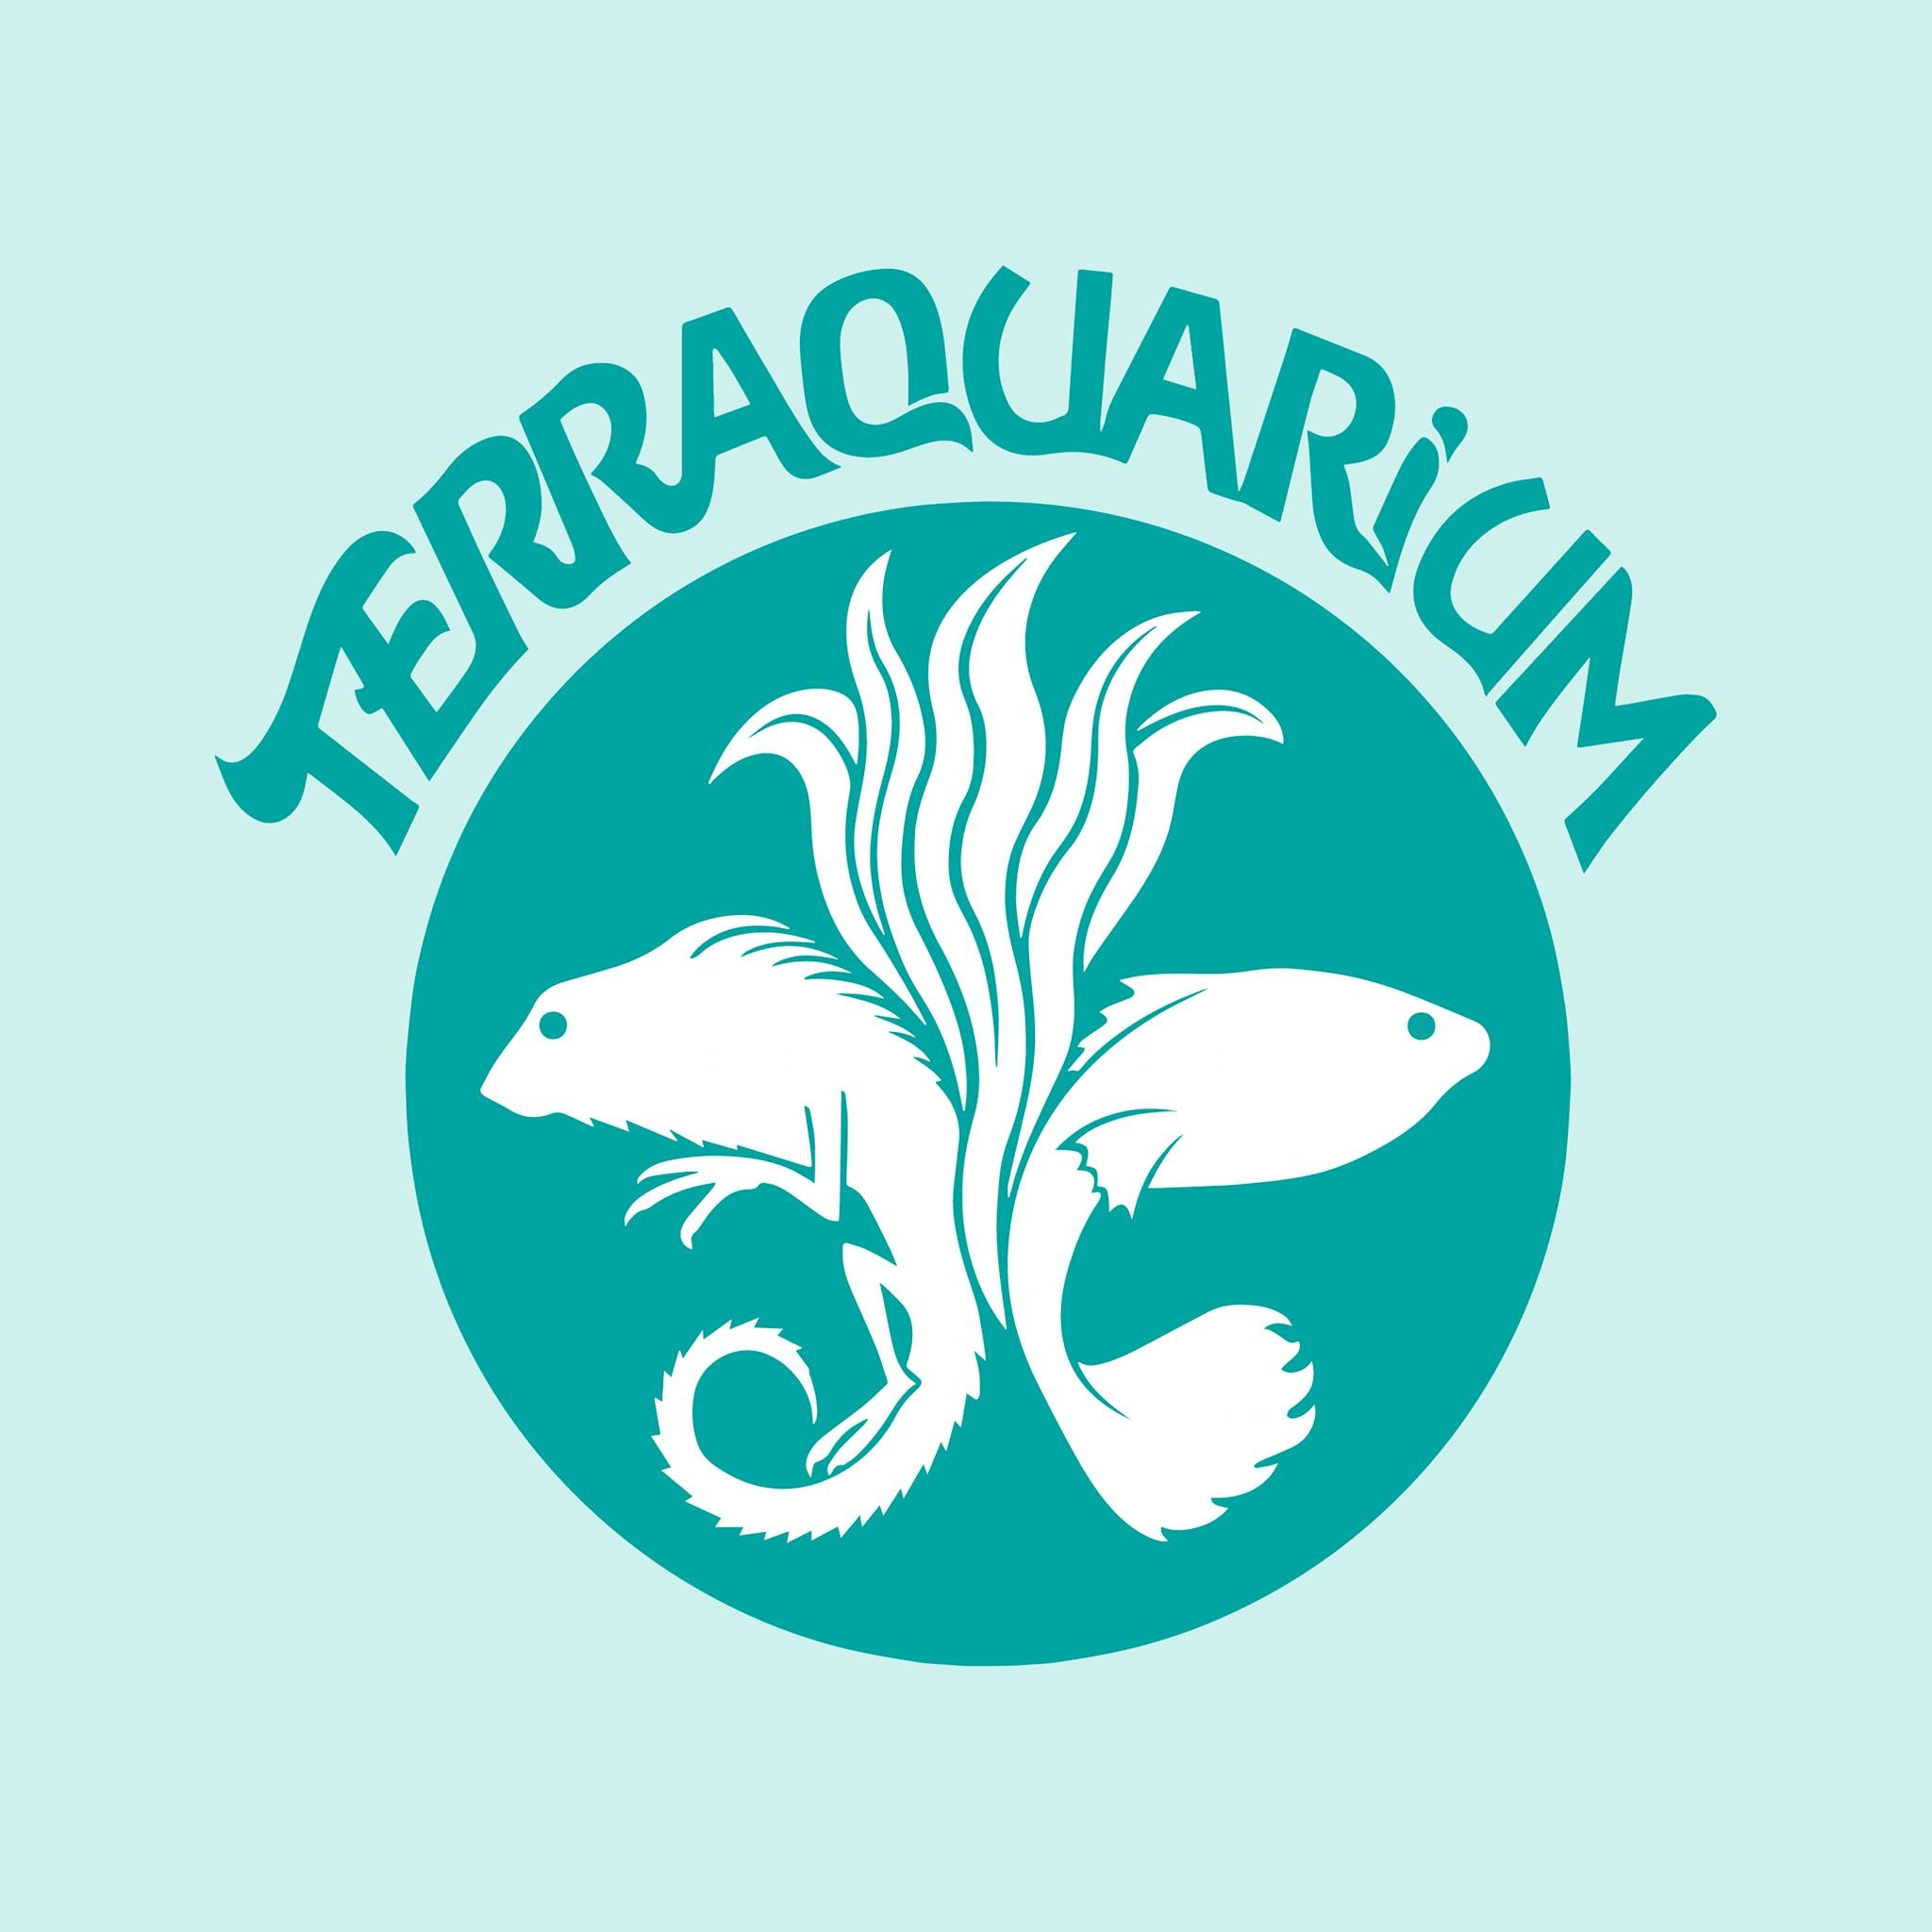 terraquarium